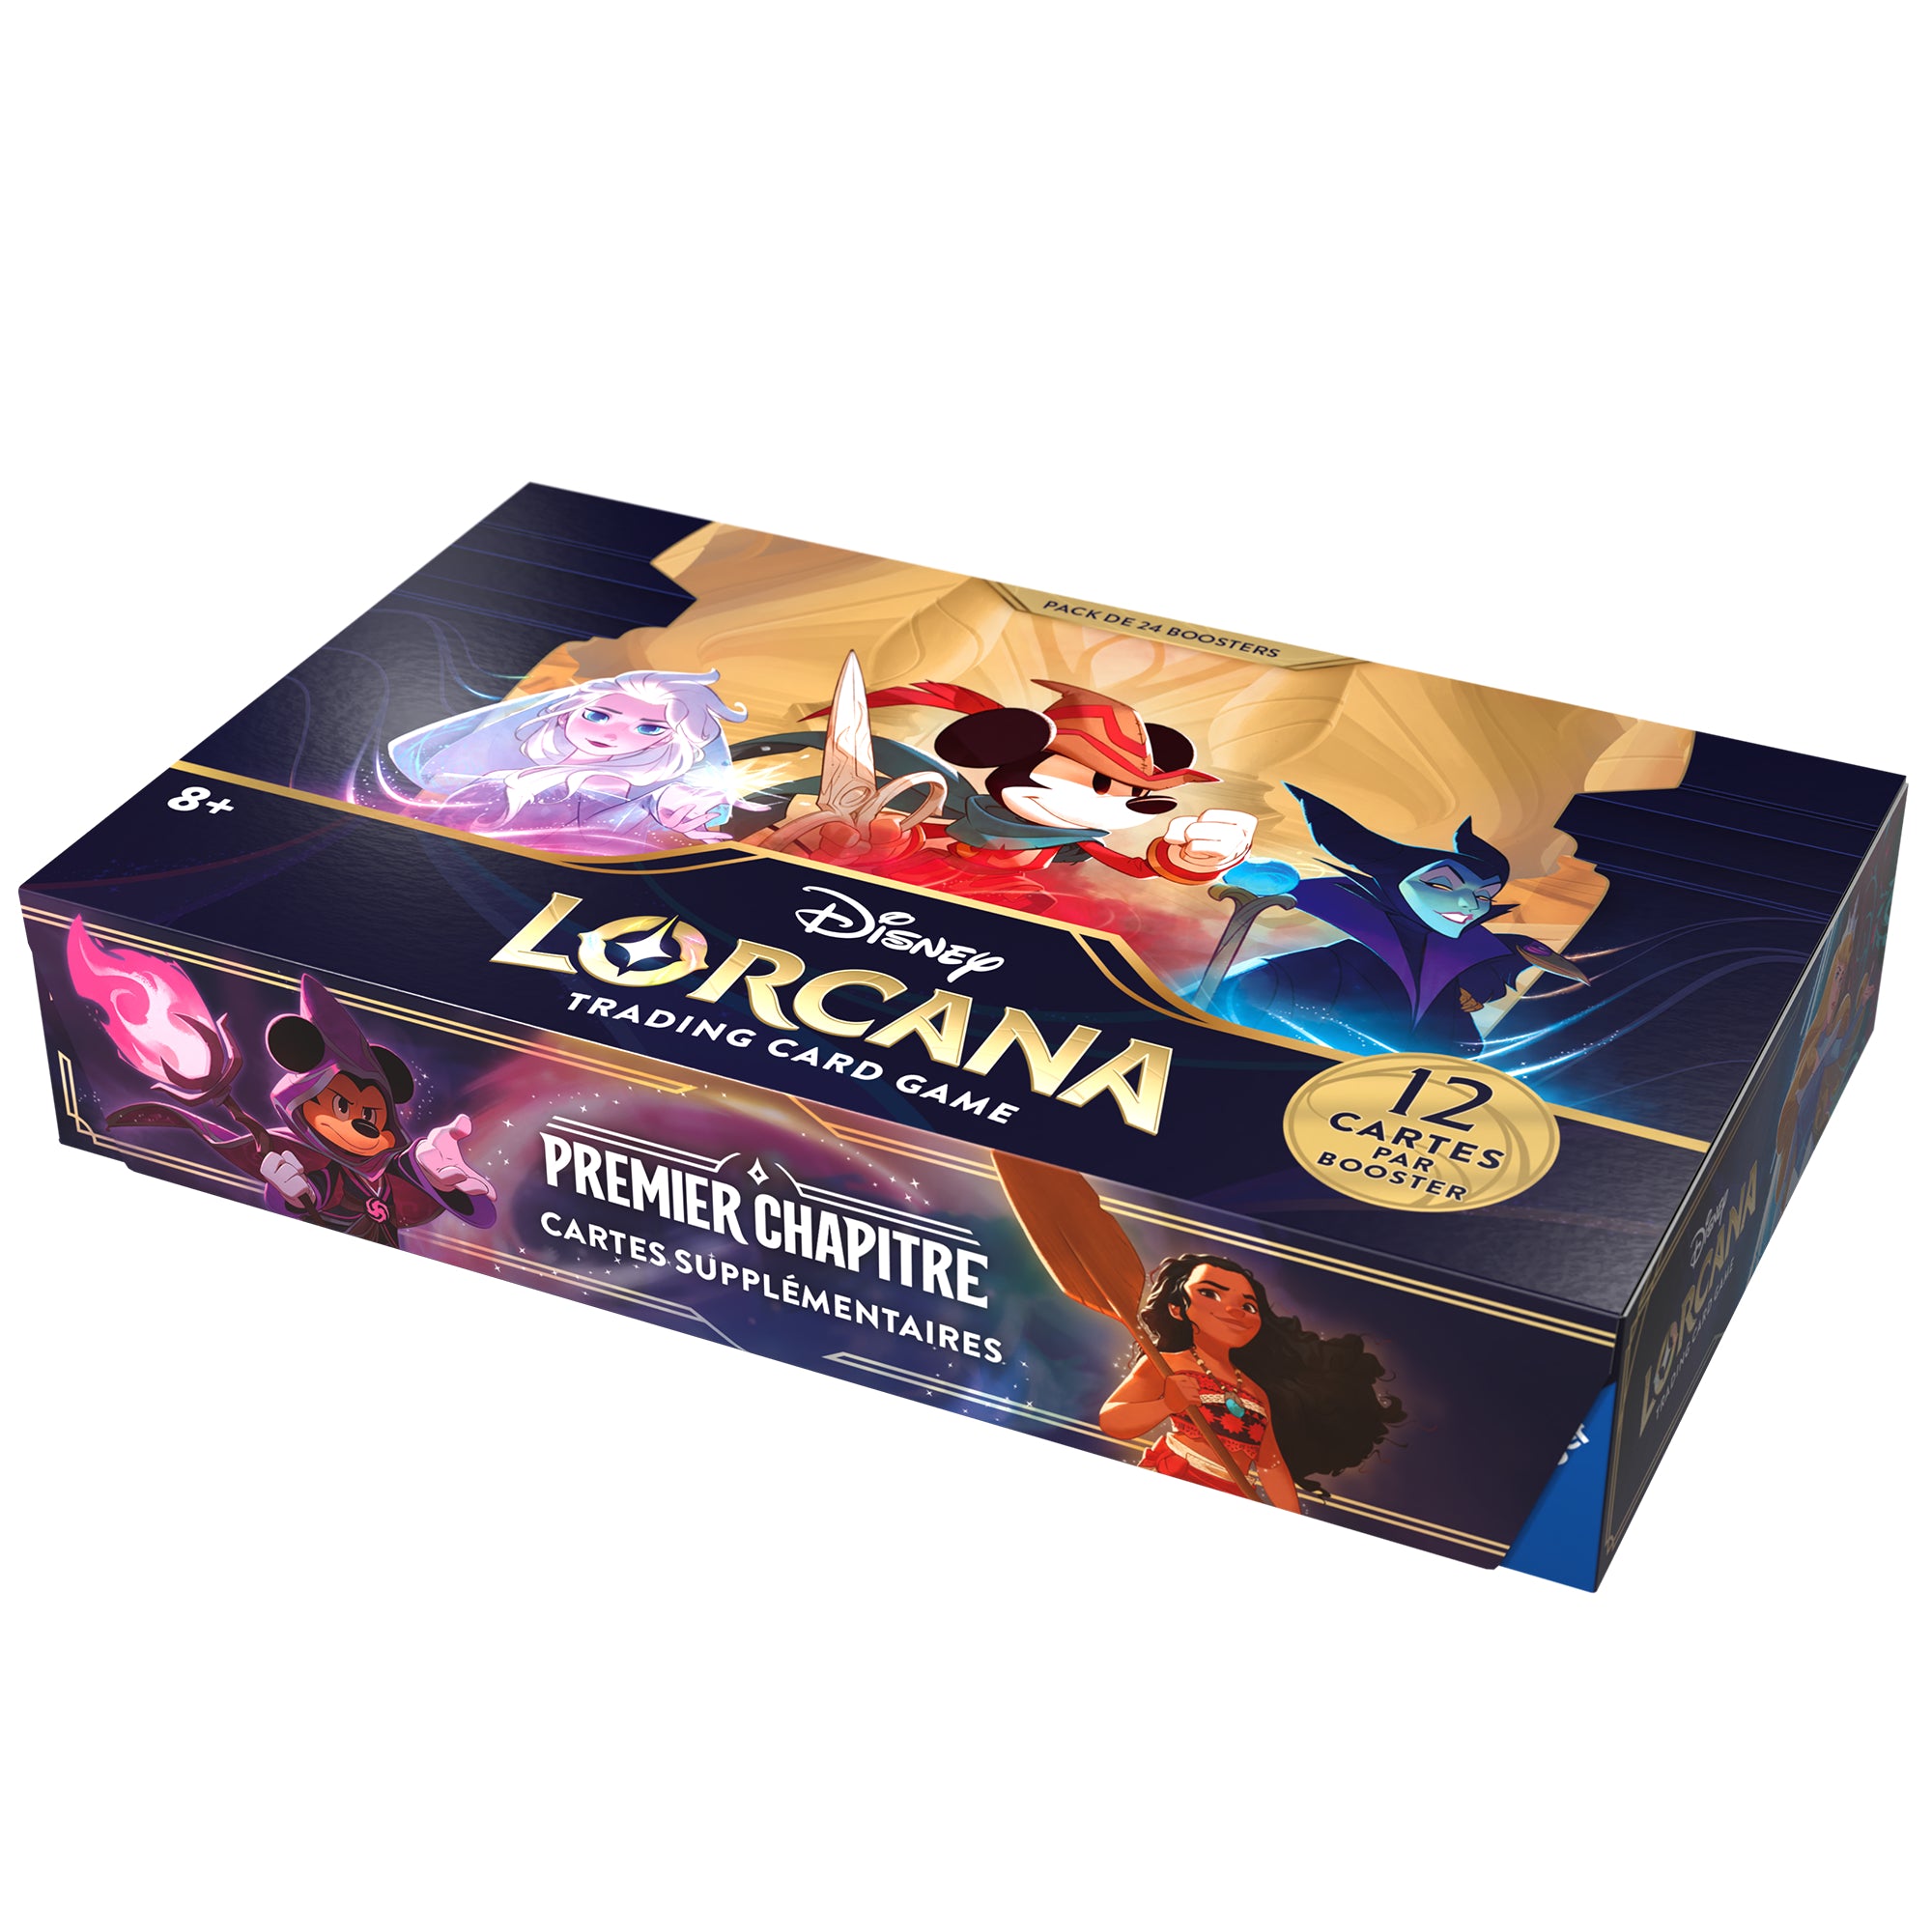 Disney Lorcana set1: Display 24 Boosters français - 0